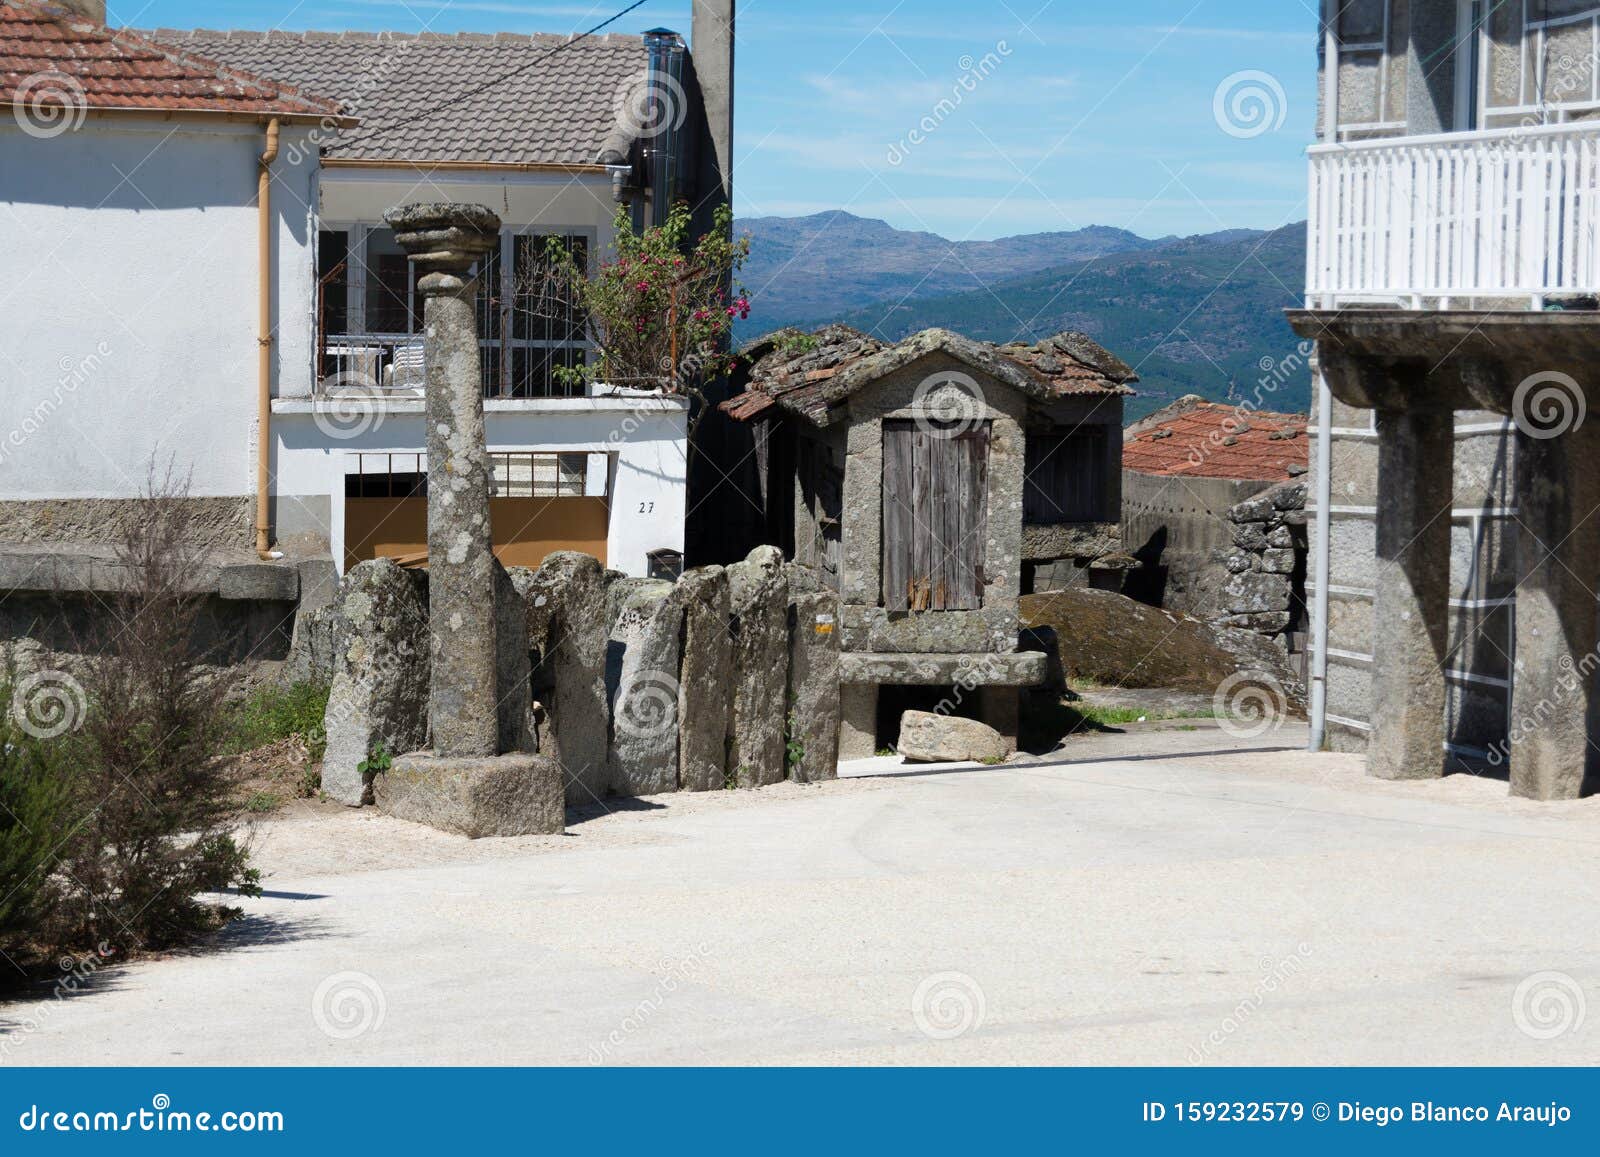 arquitectura rural gallega